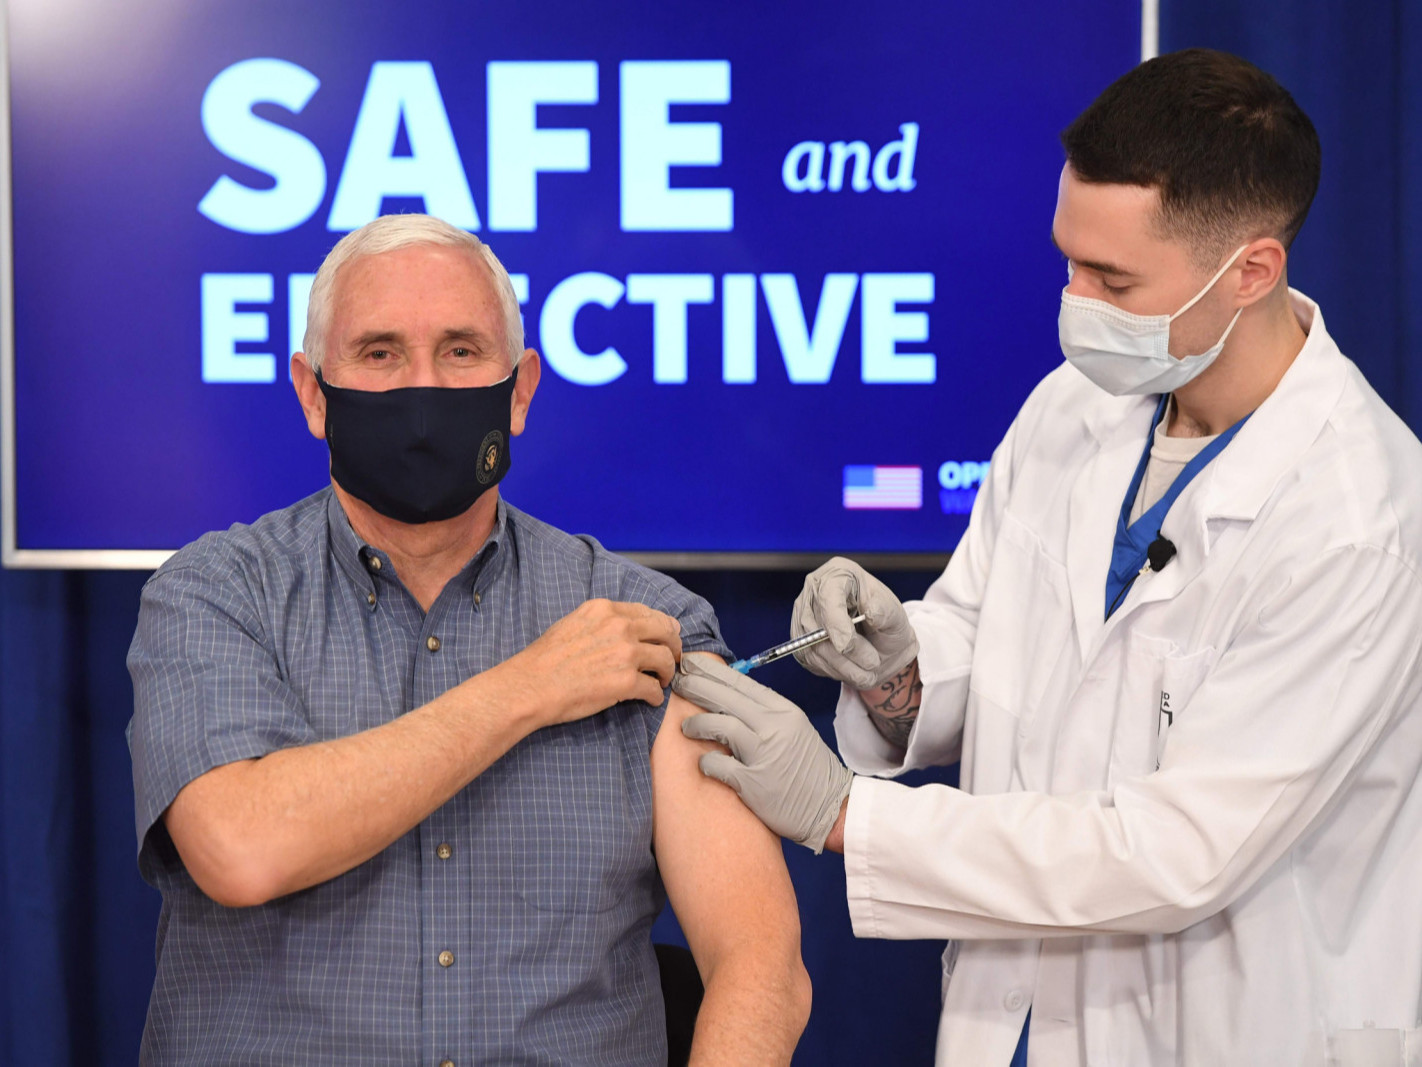 ВИДЕО: АНУ-ын дэд ерөнхийлөгч камерны өмнө коронавирусийн эсрэг вакцин хийлгэлээ